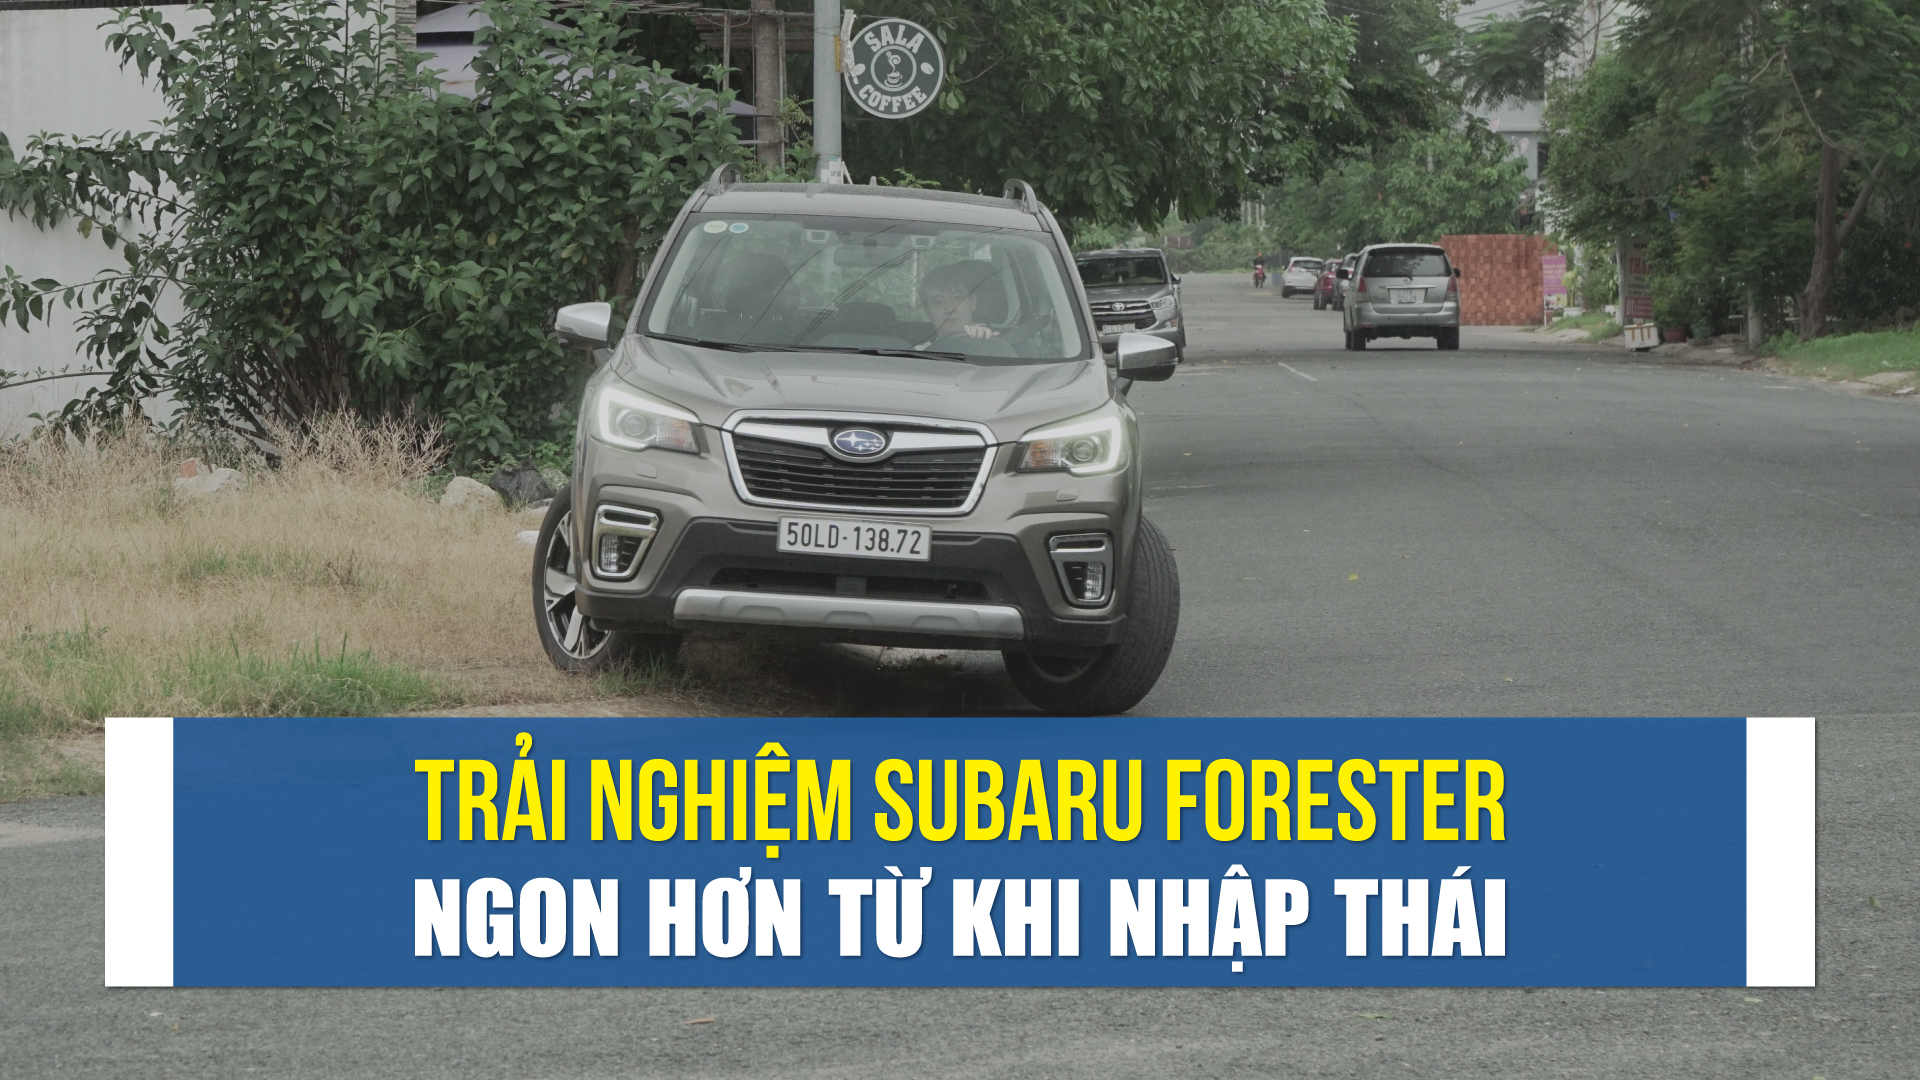 Nhìn nhận Subaru Forester, dễ tiếp cận hơn từ khi nhập Thái